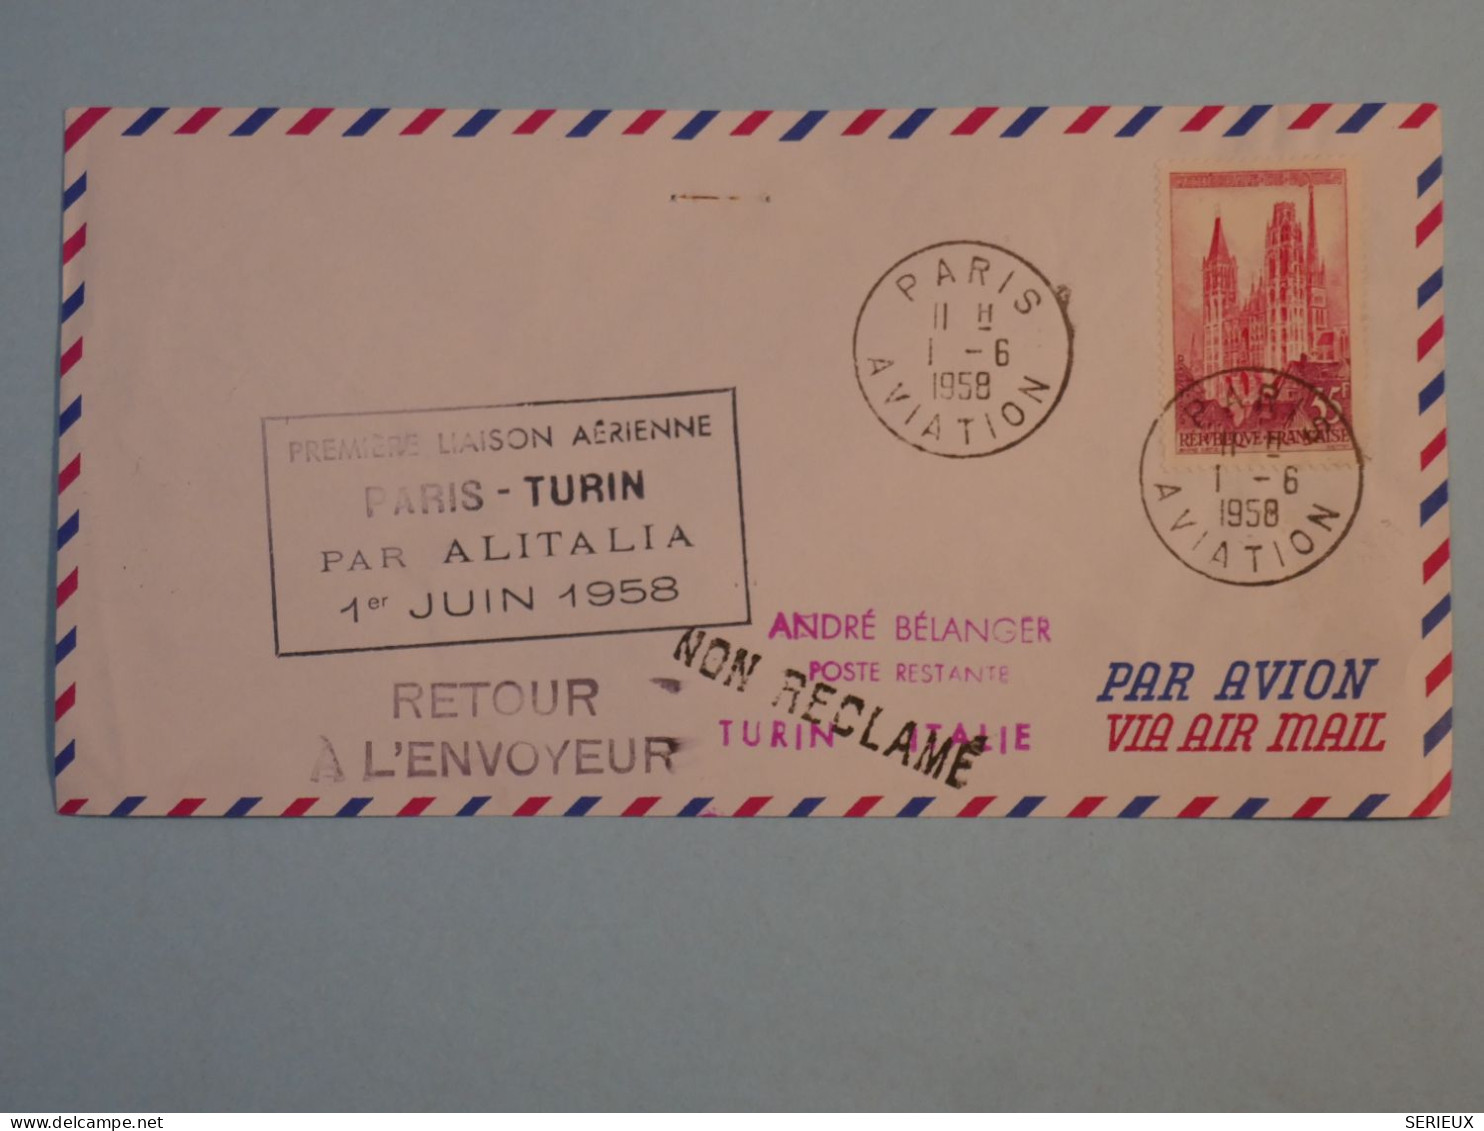 BT2 FRANCE  BELLE LETTRE  1958 1ER LIAISON  PARIS A TURIN ITALIA  + AFF. PLAISANT+++ - Premiers Vols